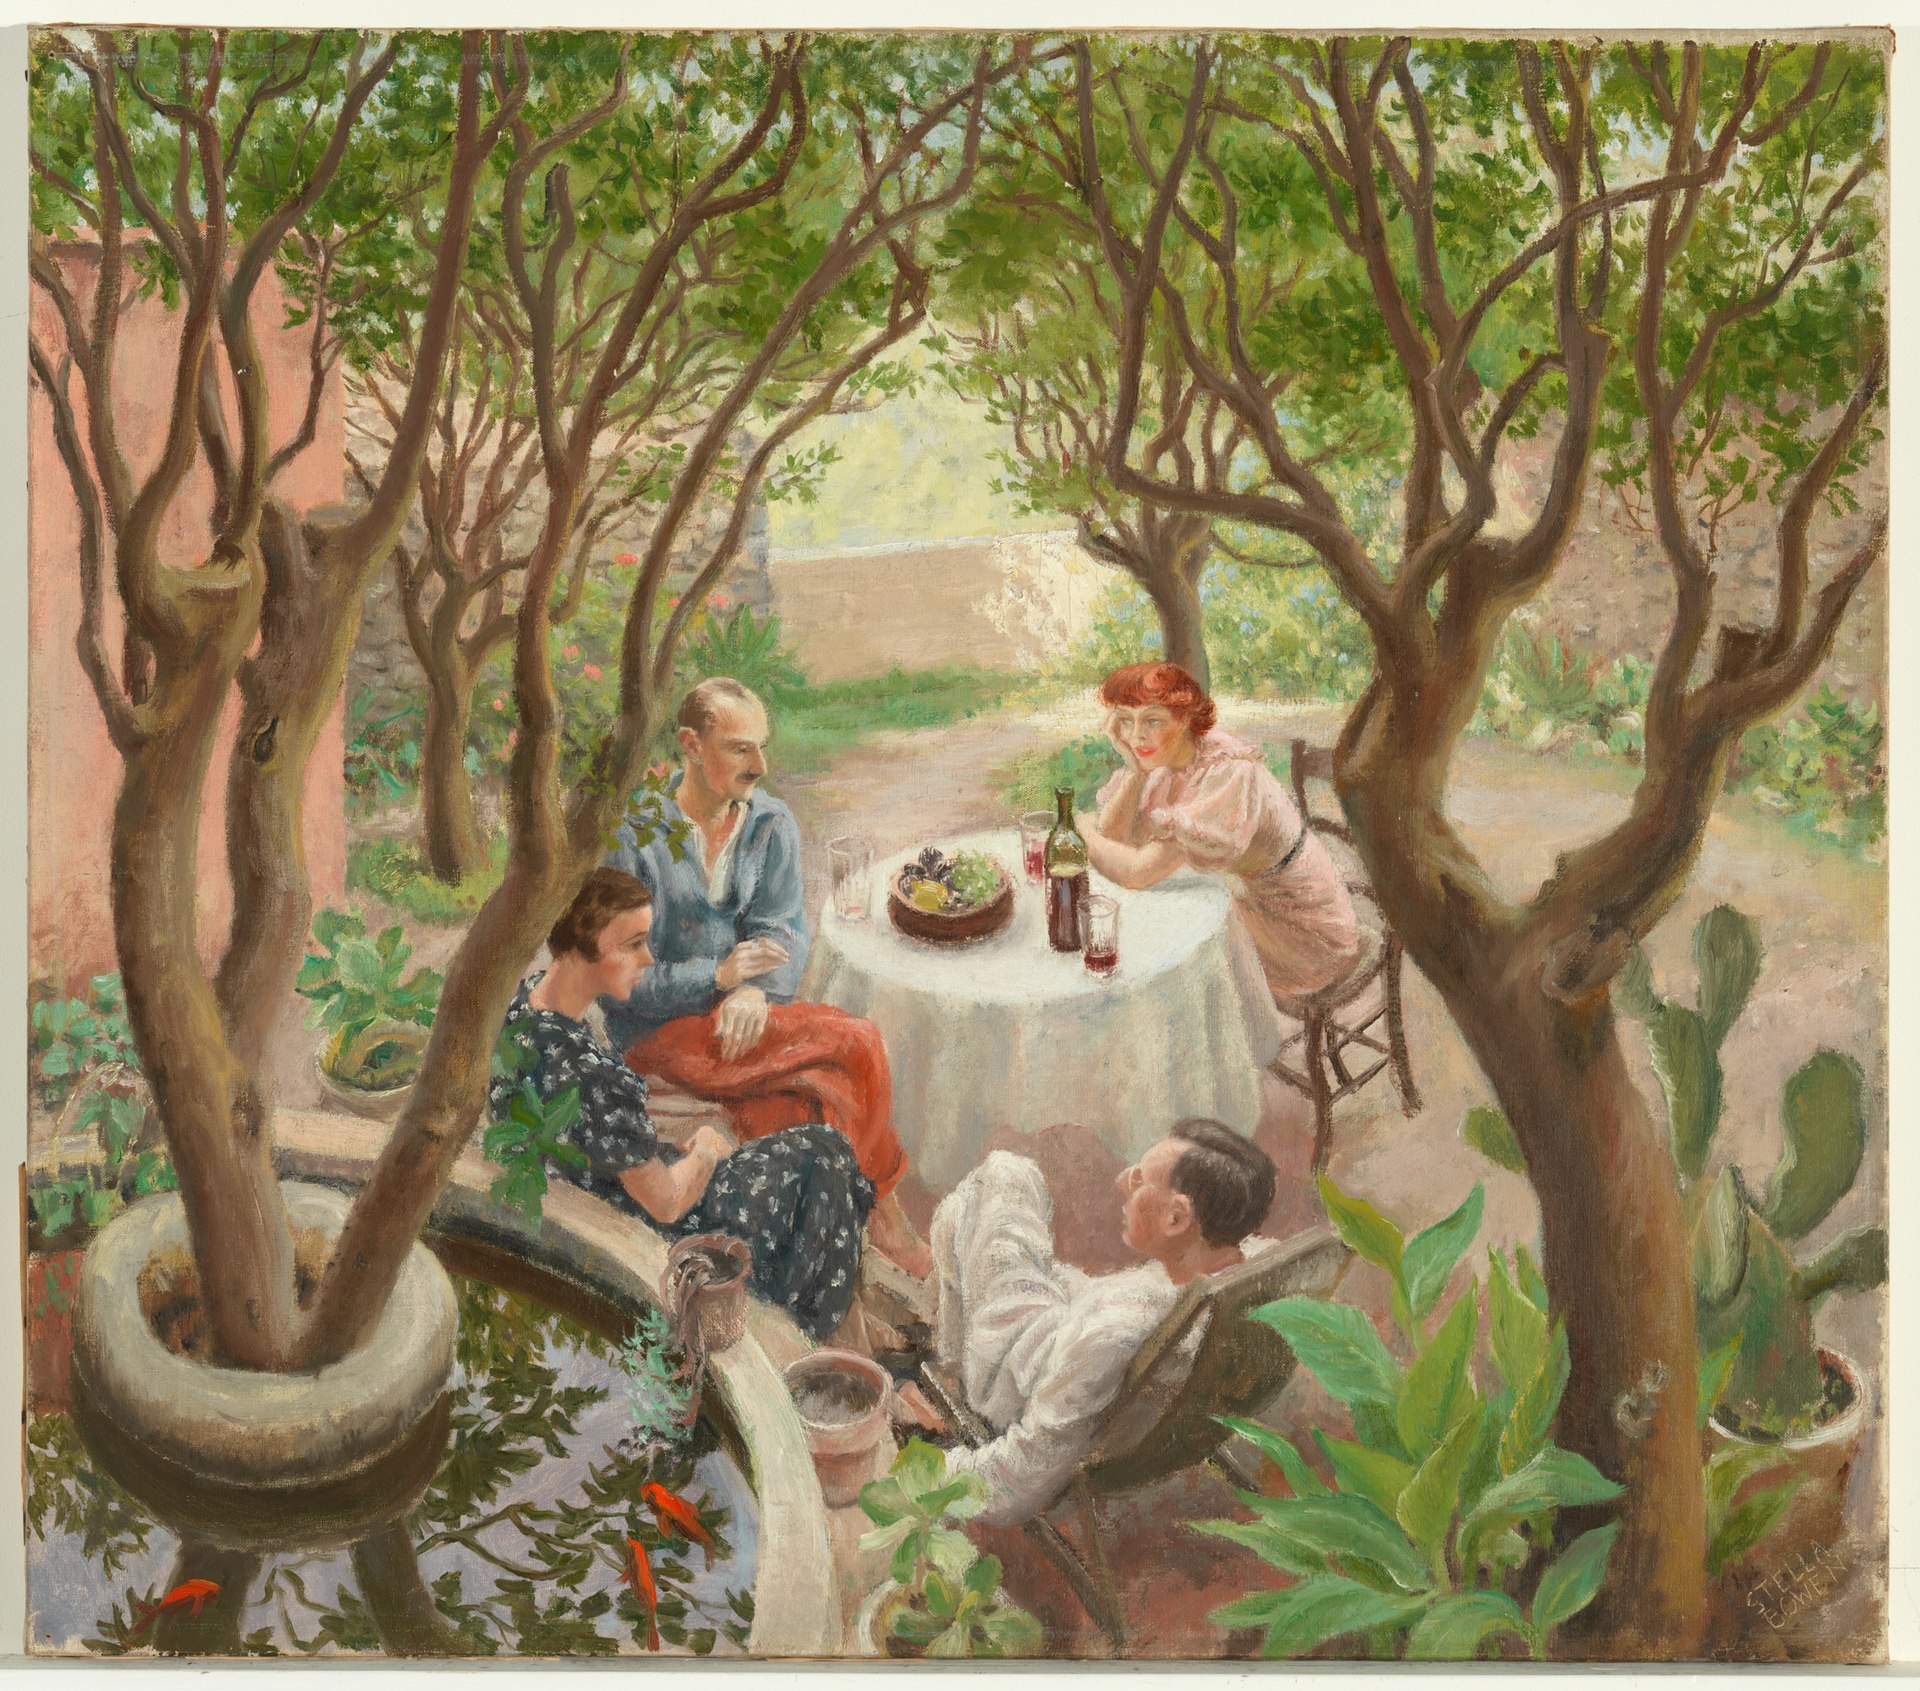 Provençal Conver­sation, Cagnes-sur-Mer by Stella Bowen - 1936 - 63.7 x 72.3 cm private collection